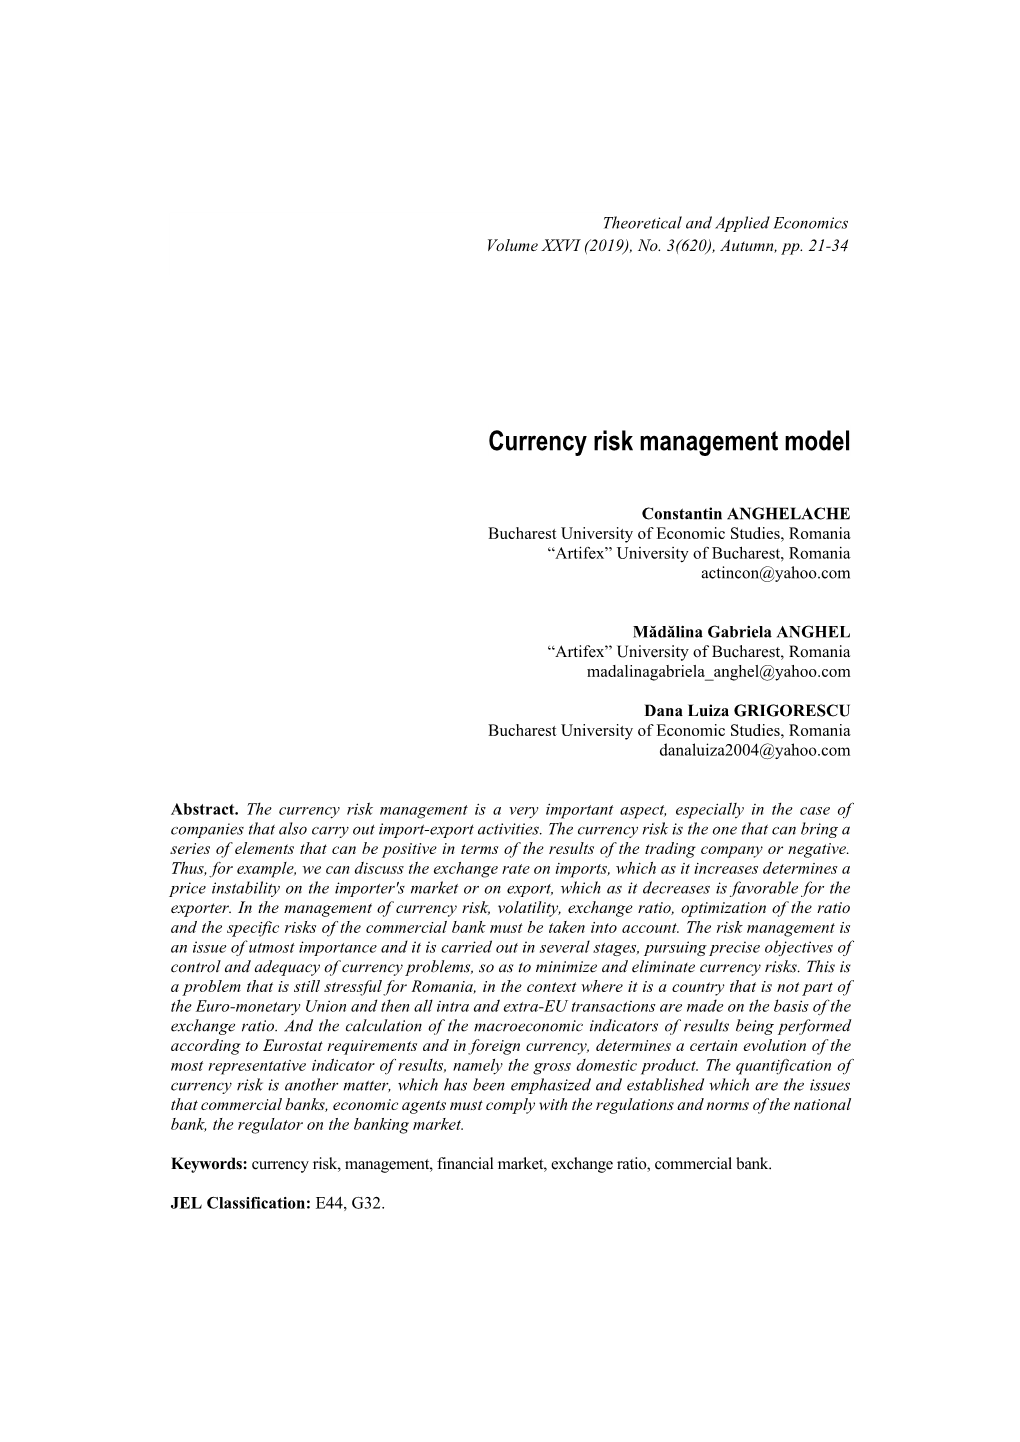 Currency Risk Management Model